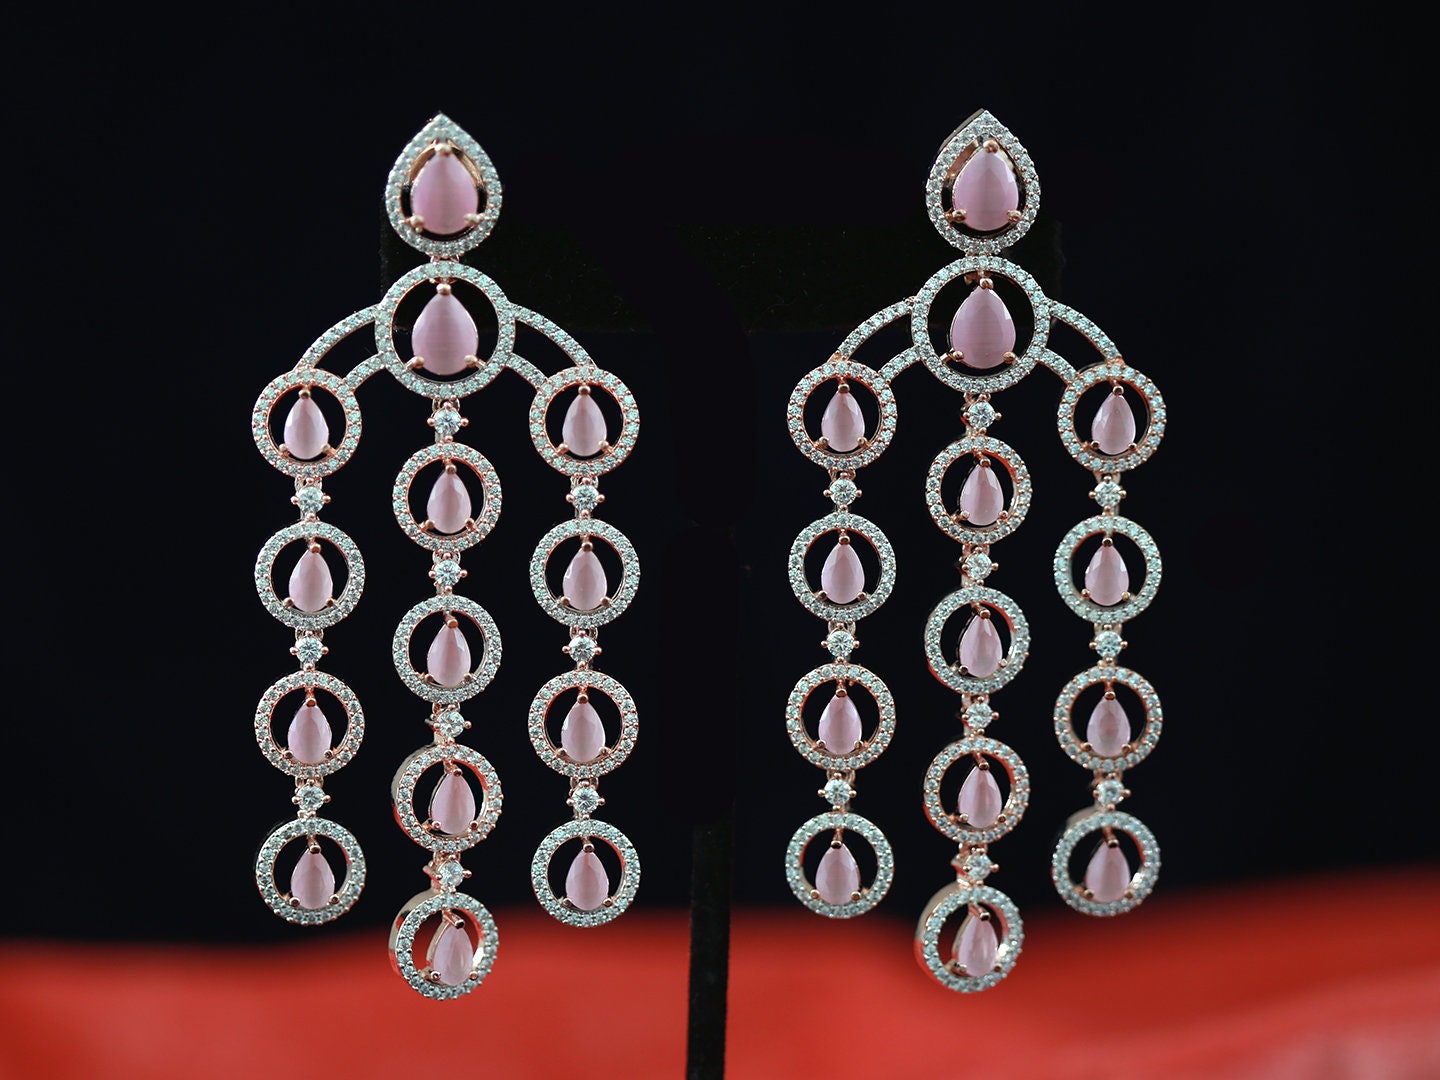 Simulated diamond chandelier earrings | Ratnali Jewels – ratnalijewels